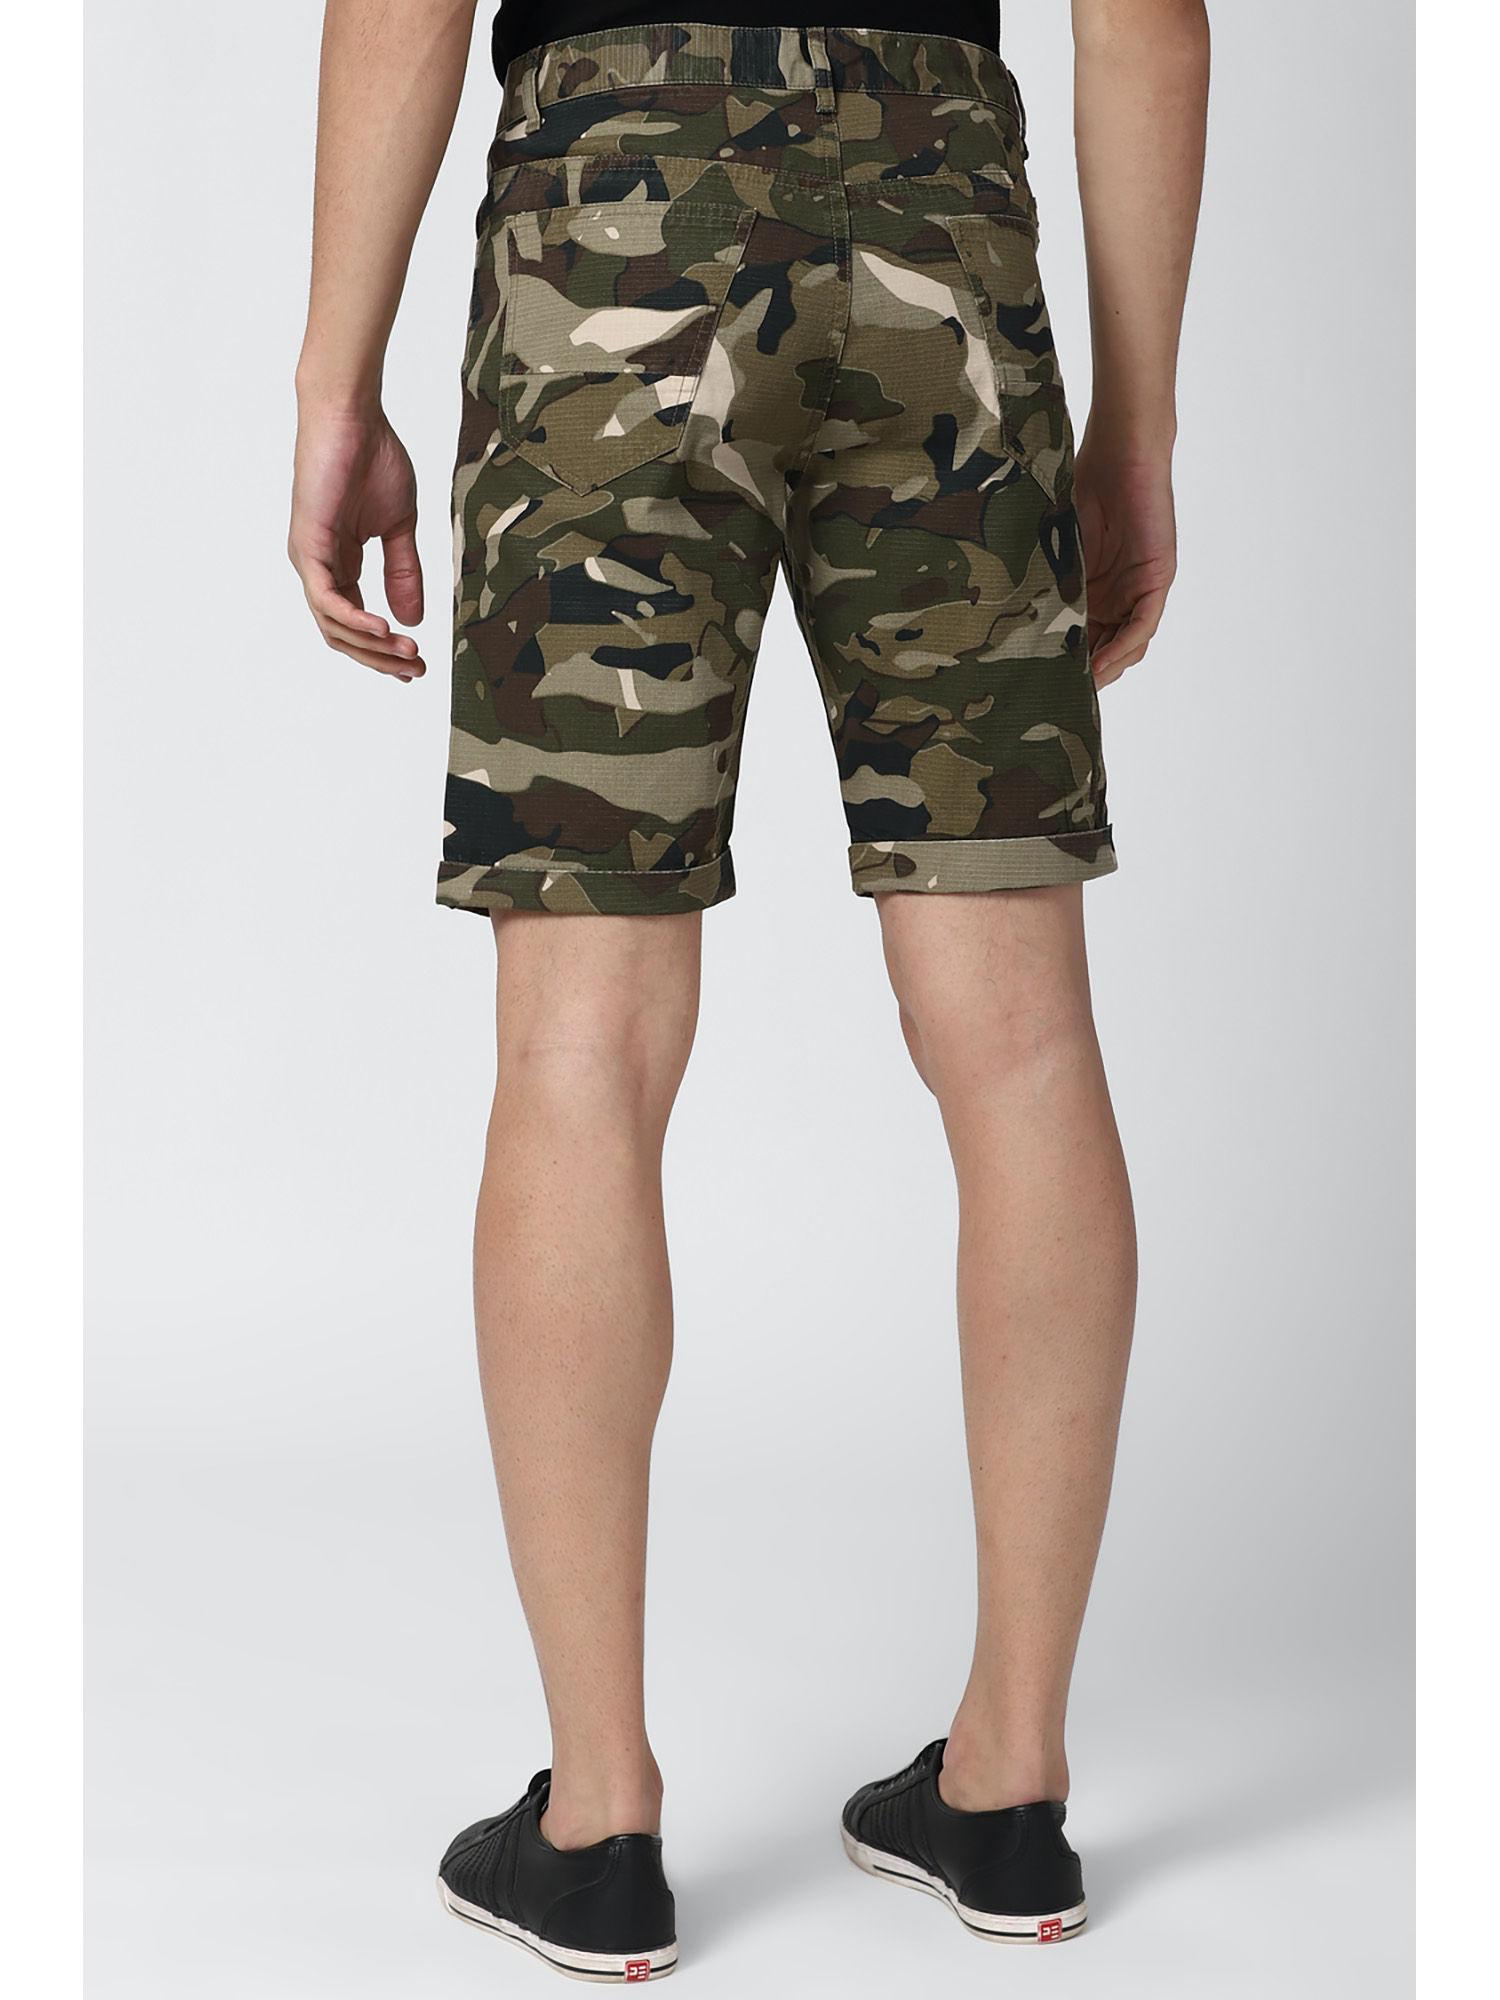 men-olive-shorts